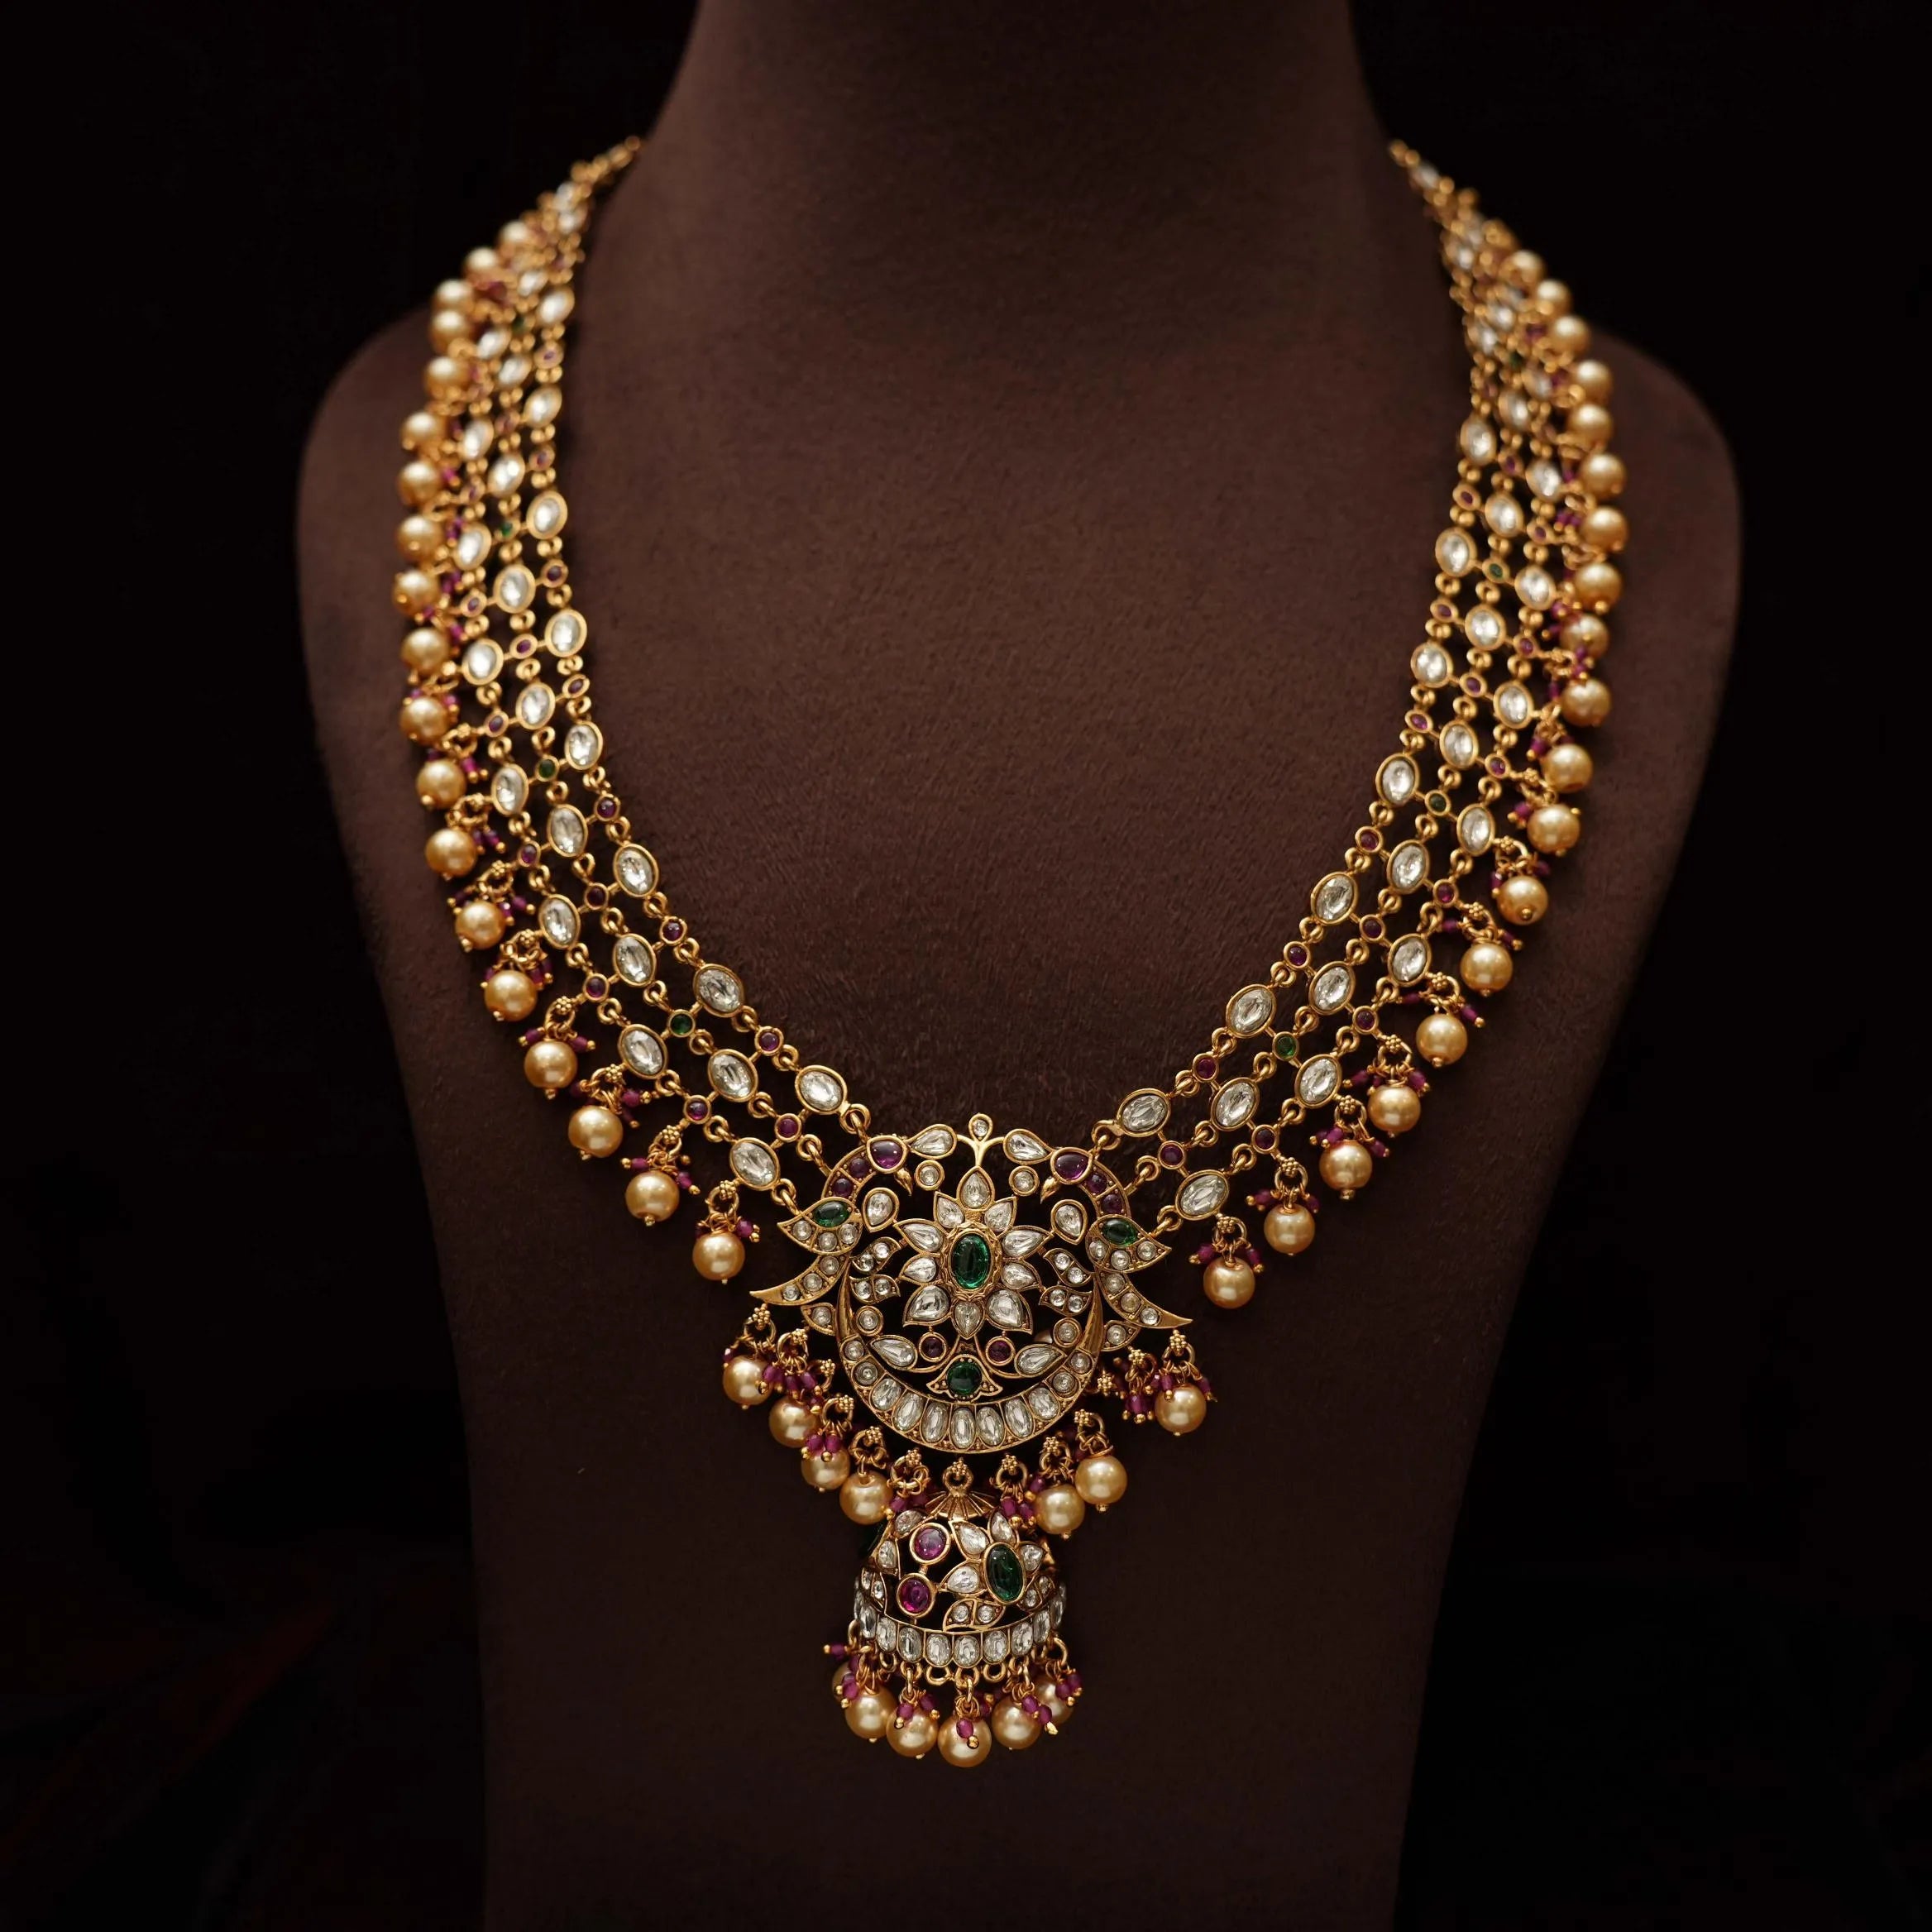 Teju Antique Necklace - Long